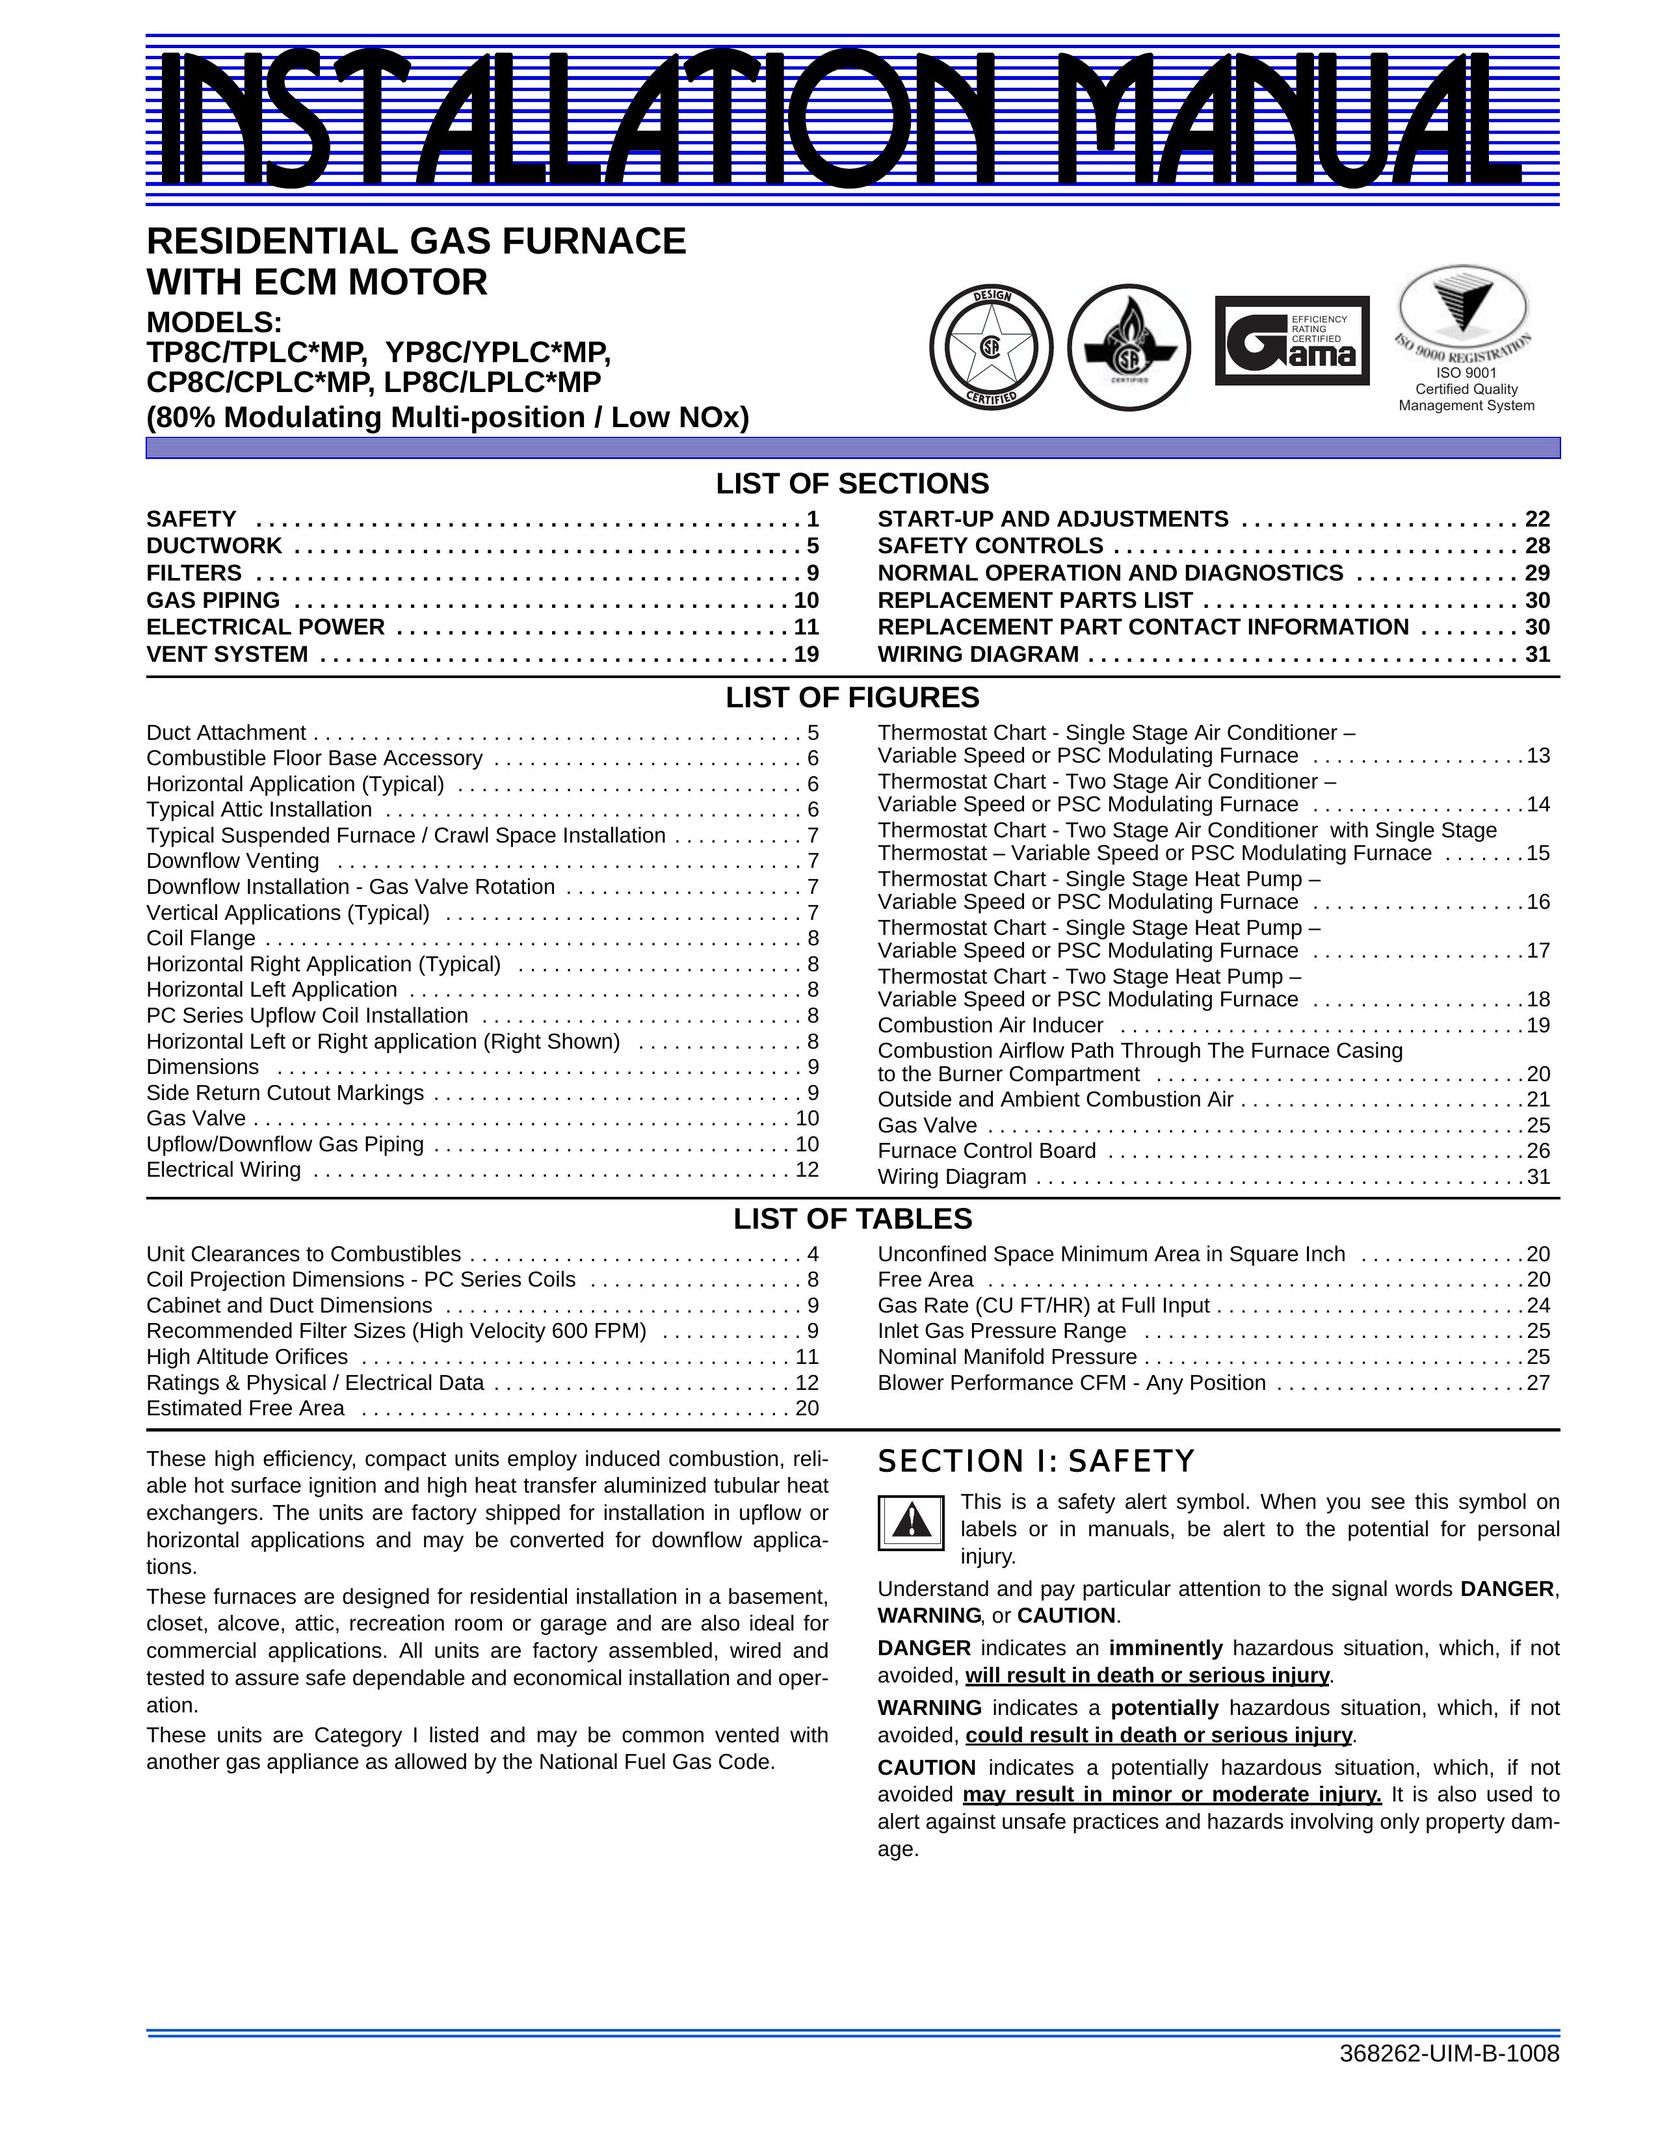 Johnson Controls TP8C/TPLC*MP Furnace User Manual